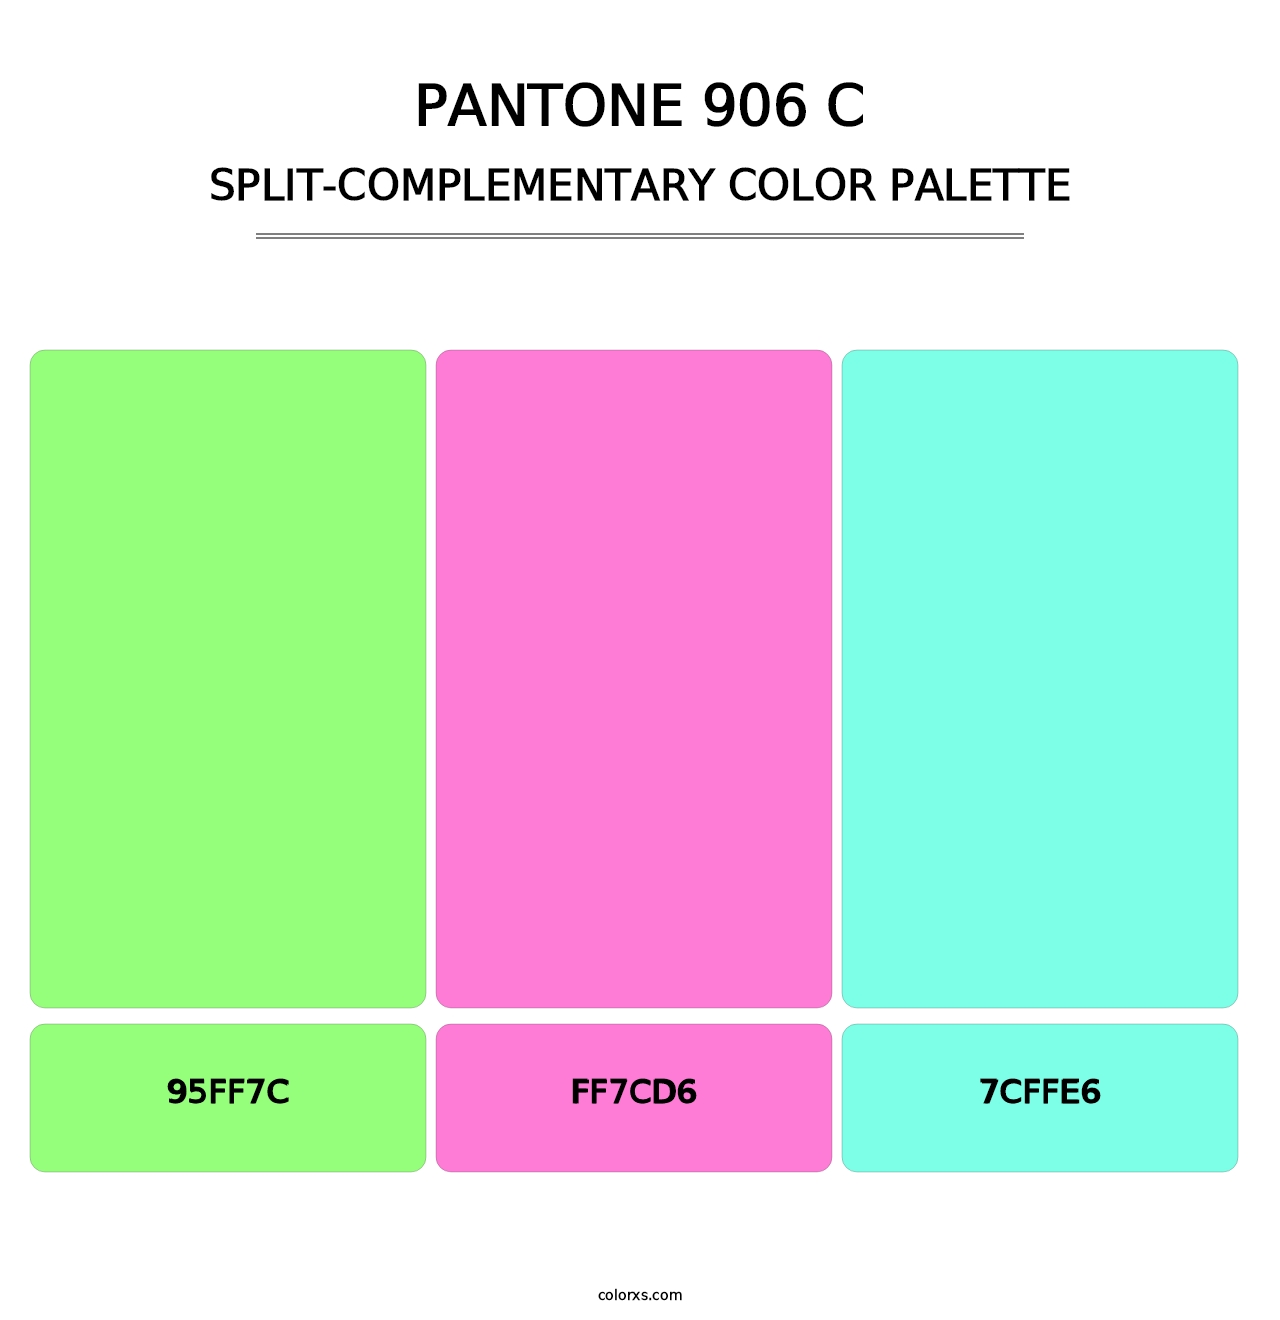 PANTONE 906 C - Split-Complementary Color Palette